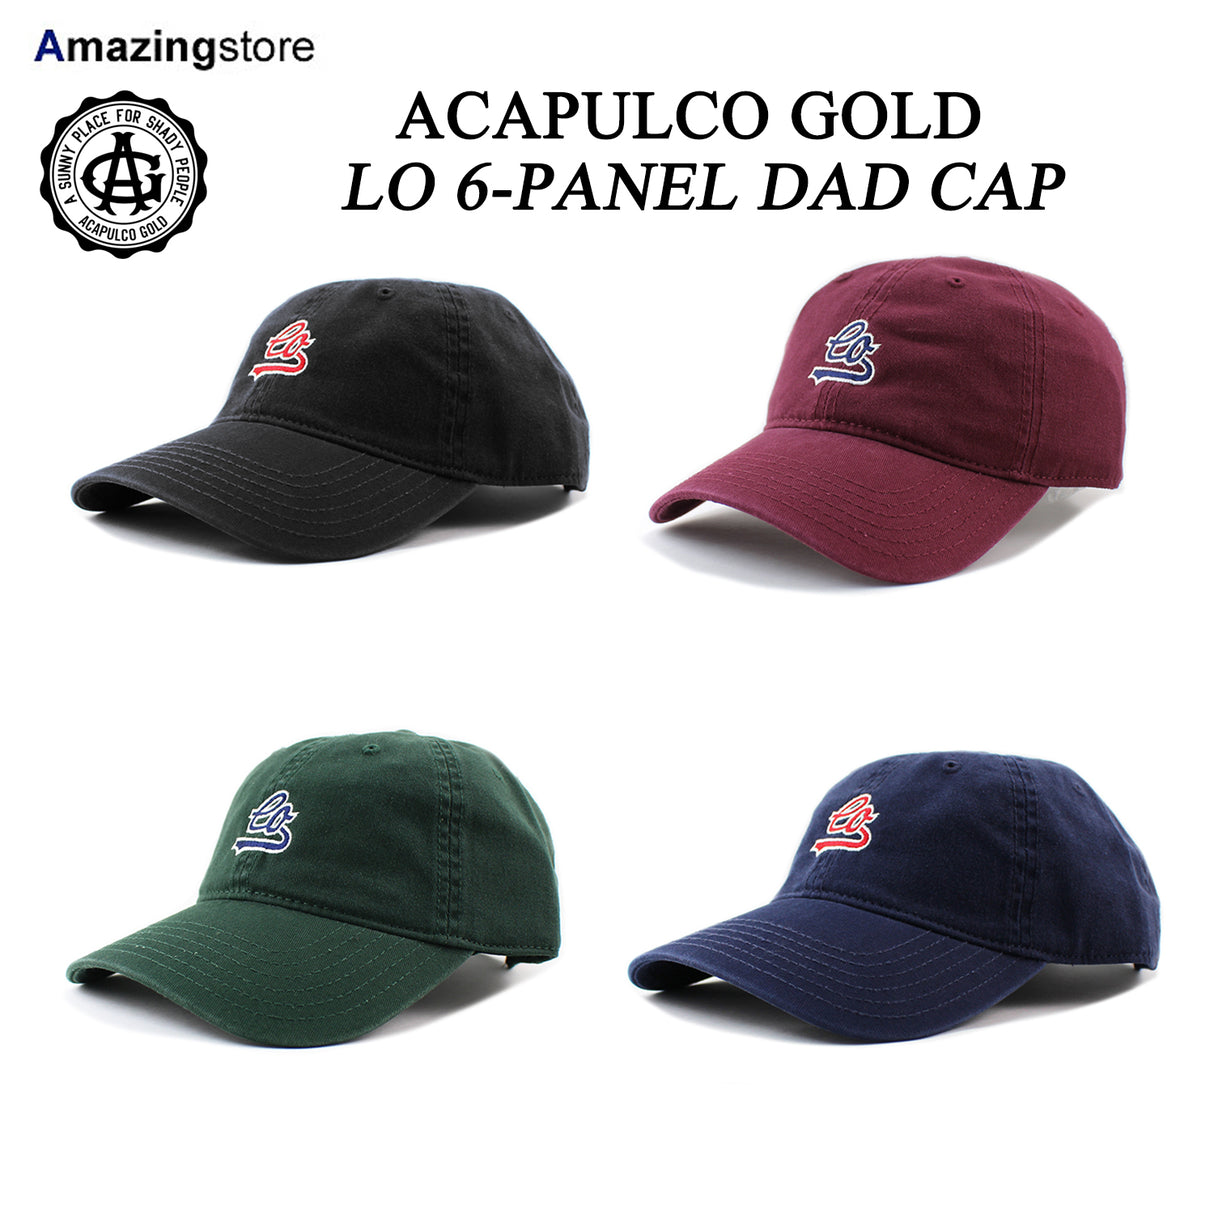 アカプルコ ゴールド ストラップバック キャップ【LO 6-PANEL DAD CAP】 ACAPULCO GOLD